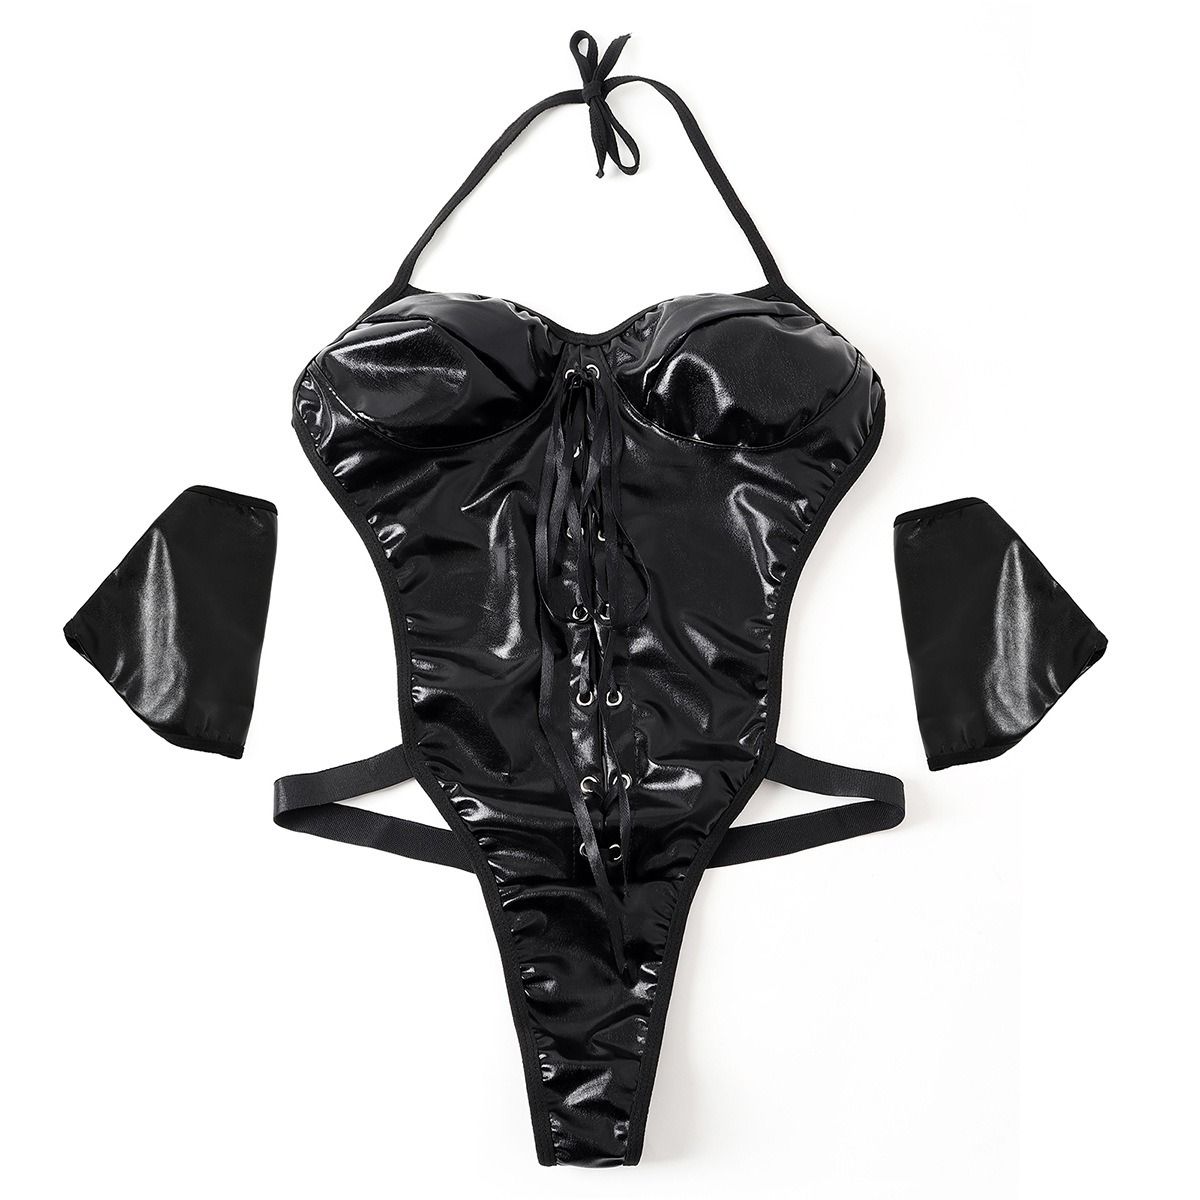 Women Unique Wet Look Bodysuit - Link Me Up Lingerie Game Outfit ...